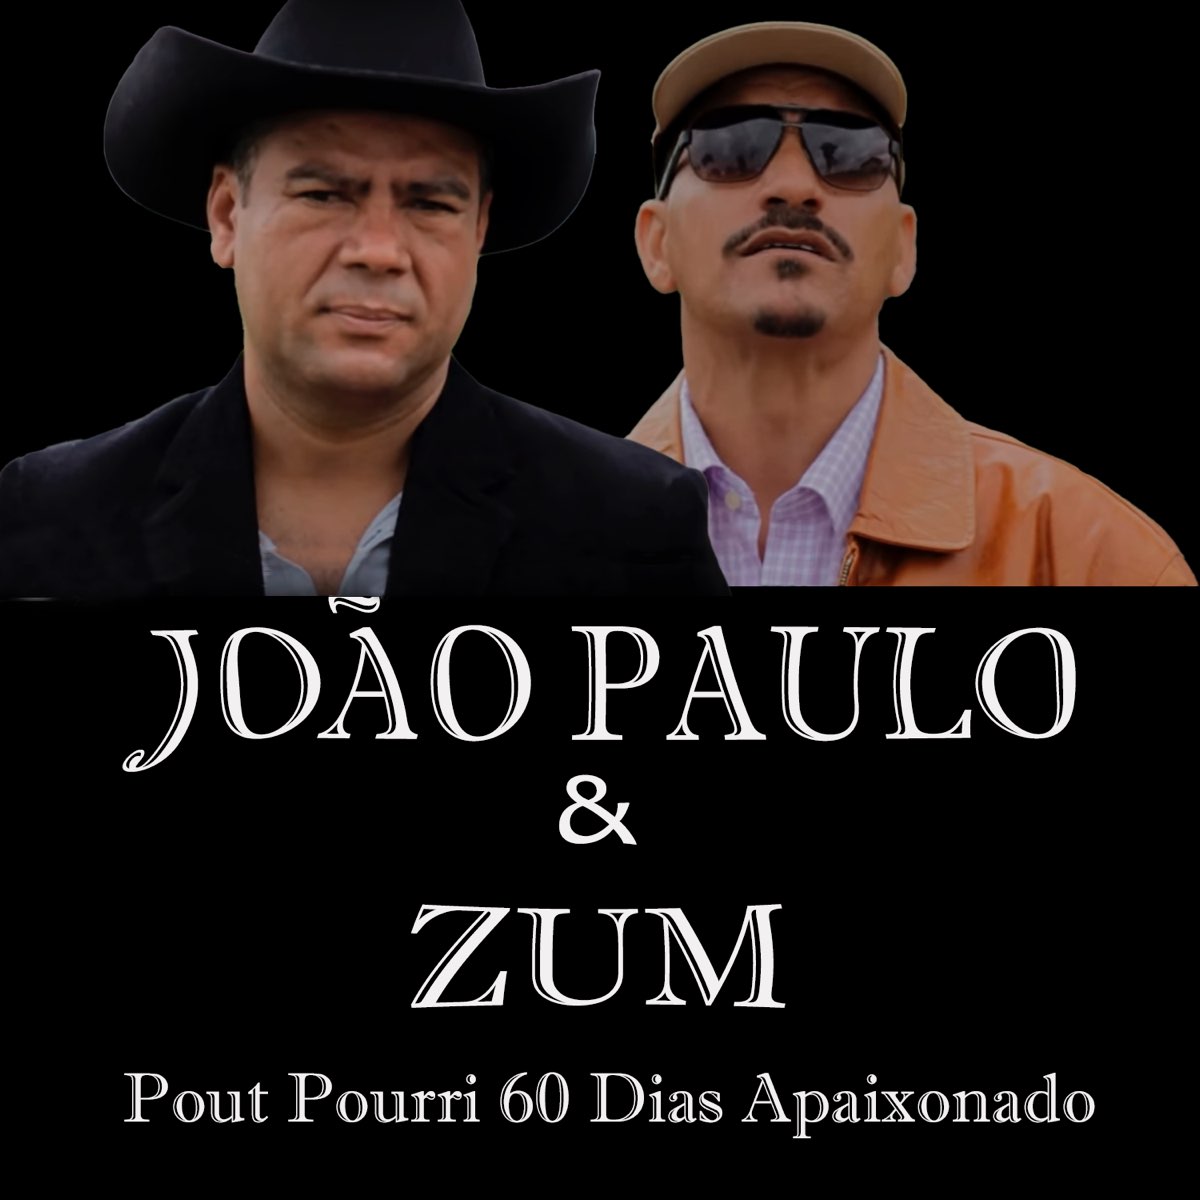 Pout Pourri 60 Dias Apaixonado - Single” álbum de João Paulo & Zum